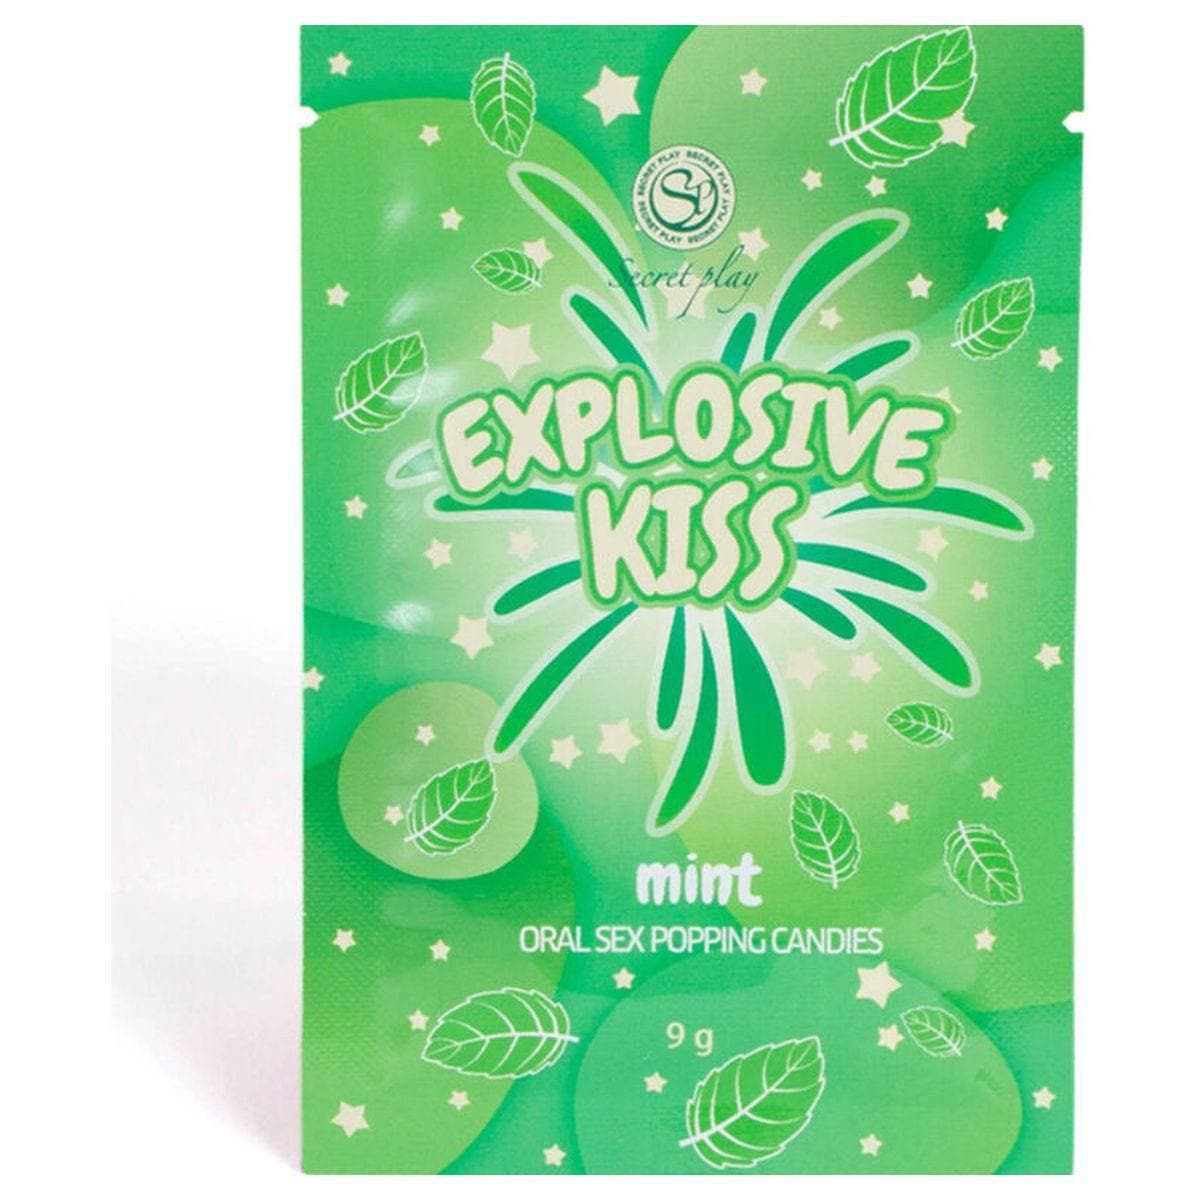 Explosive Kiss, Caramelos Explosivos de Menta com Explosão de Sabor  Secret-Play   